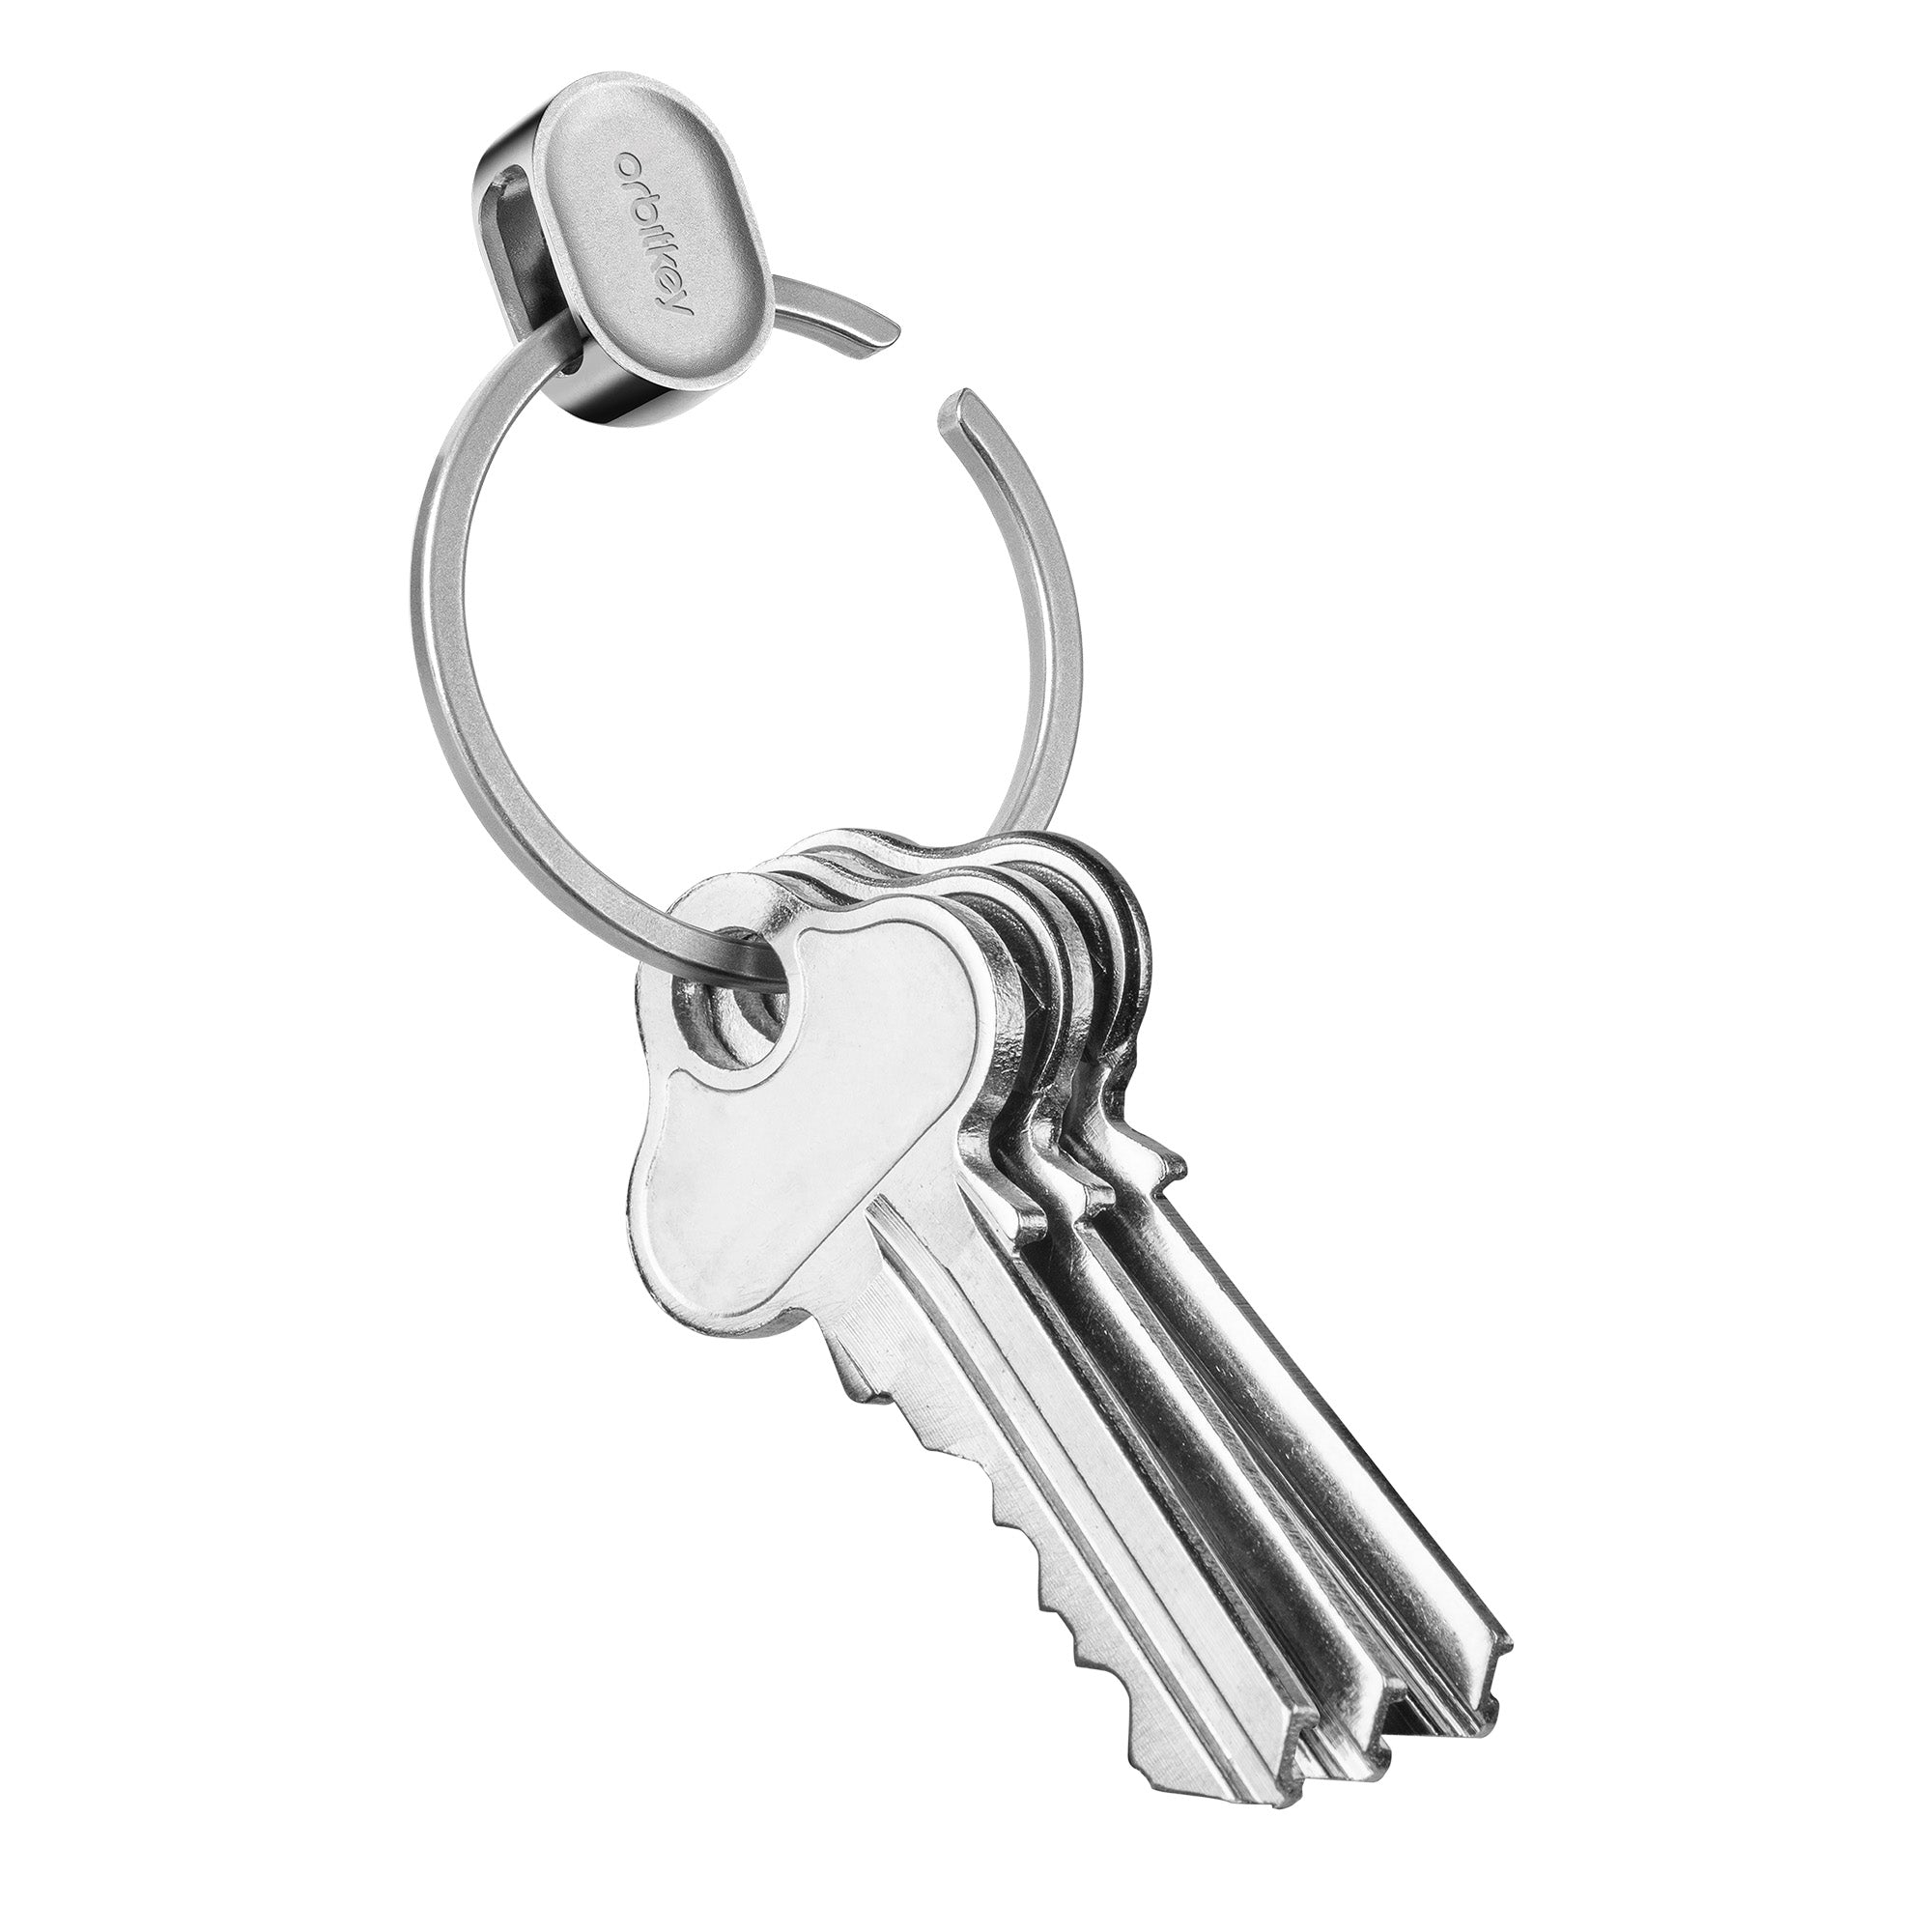 Orbitkey Ring V2 Silver│Sleutelhanger zilver│PRN2-SLV-102│sleutelring geopend met sleutels